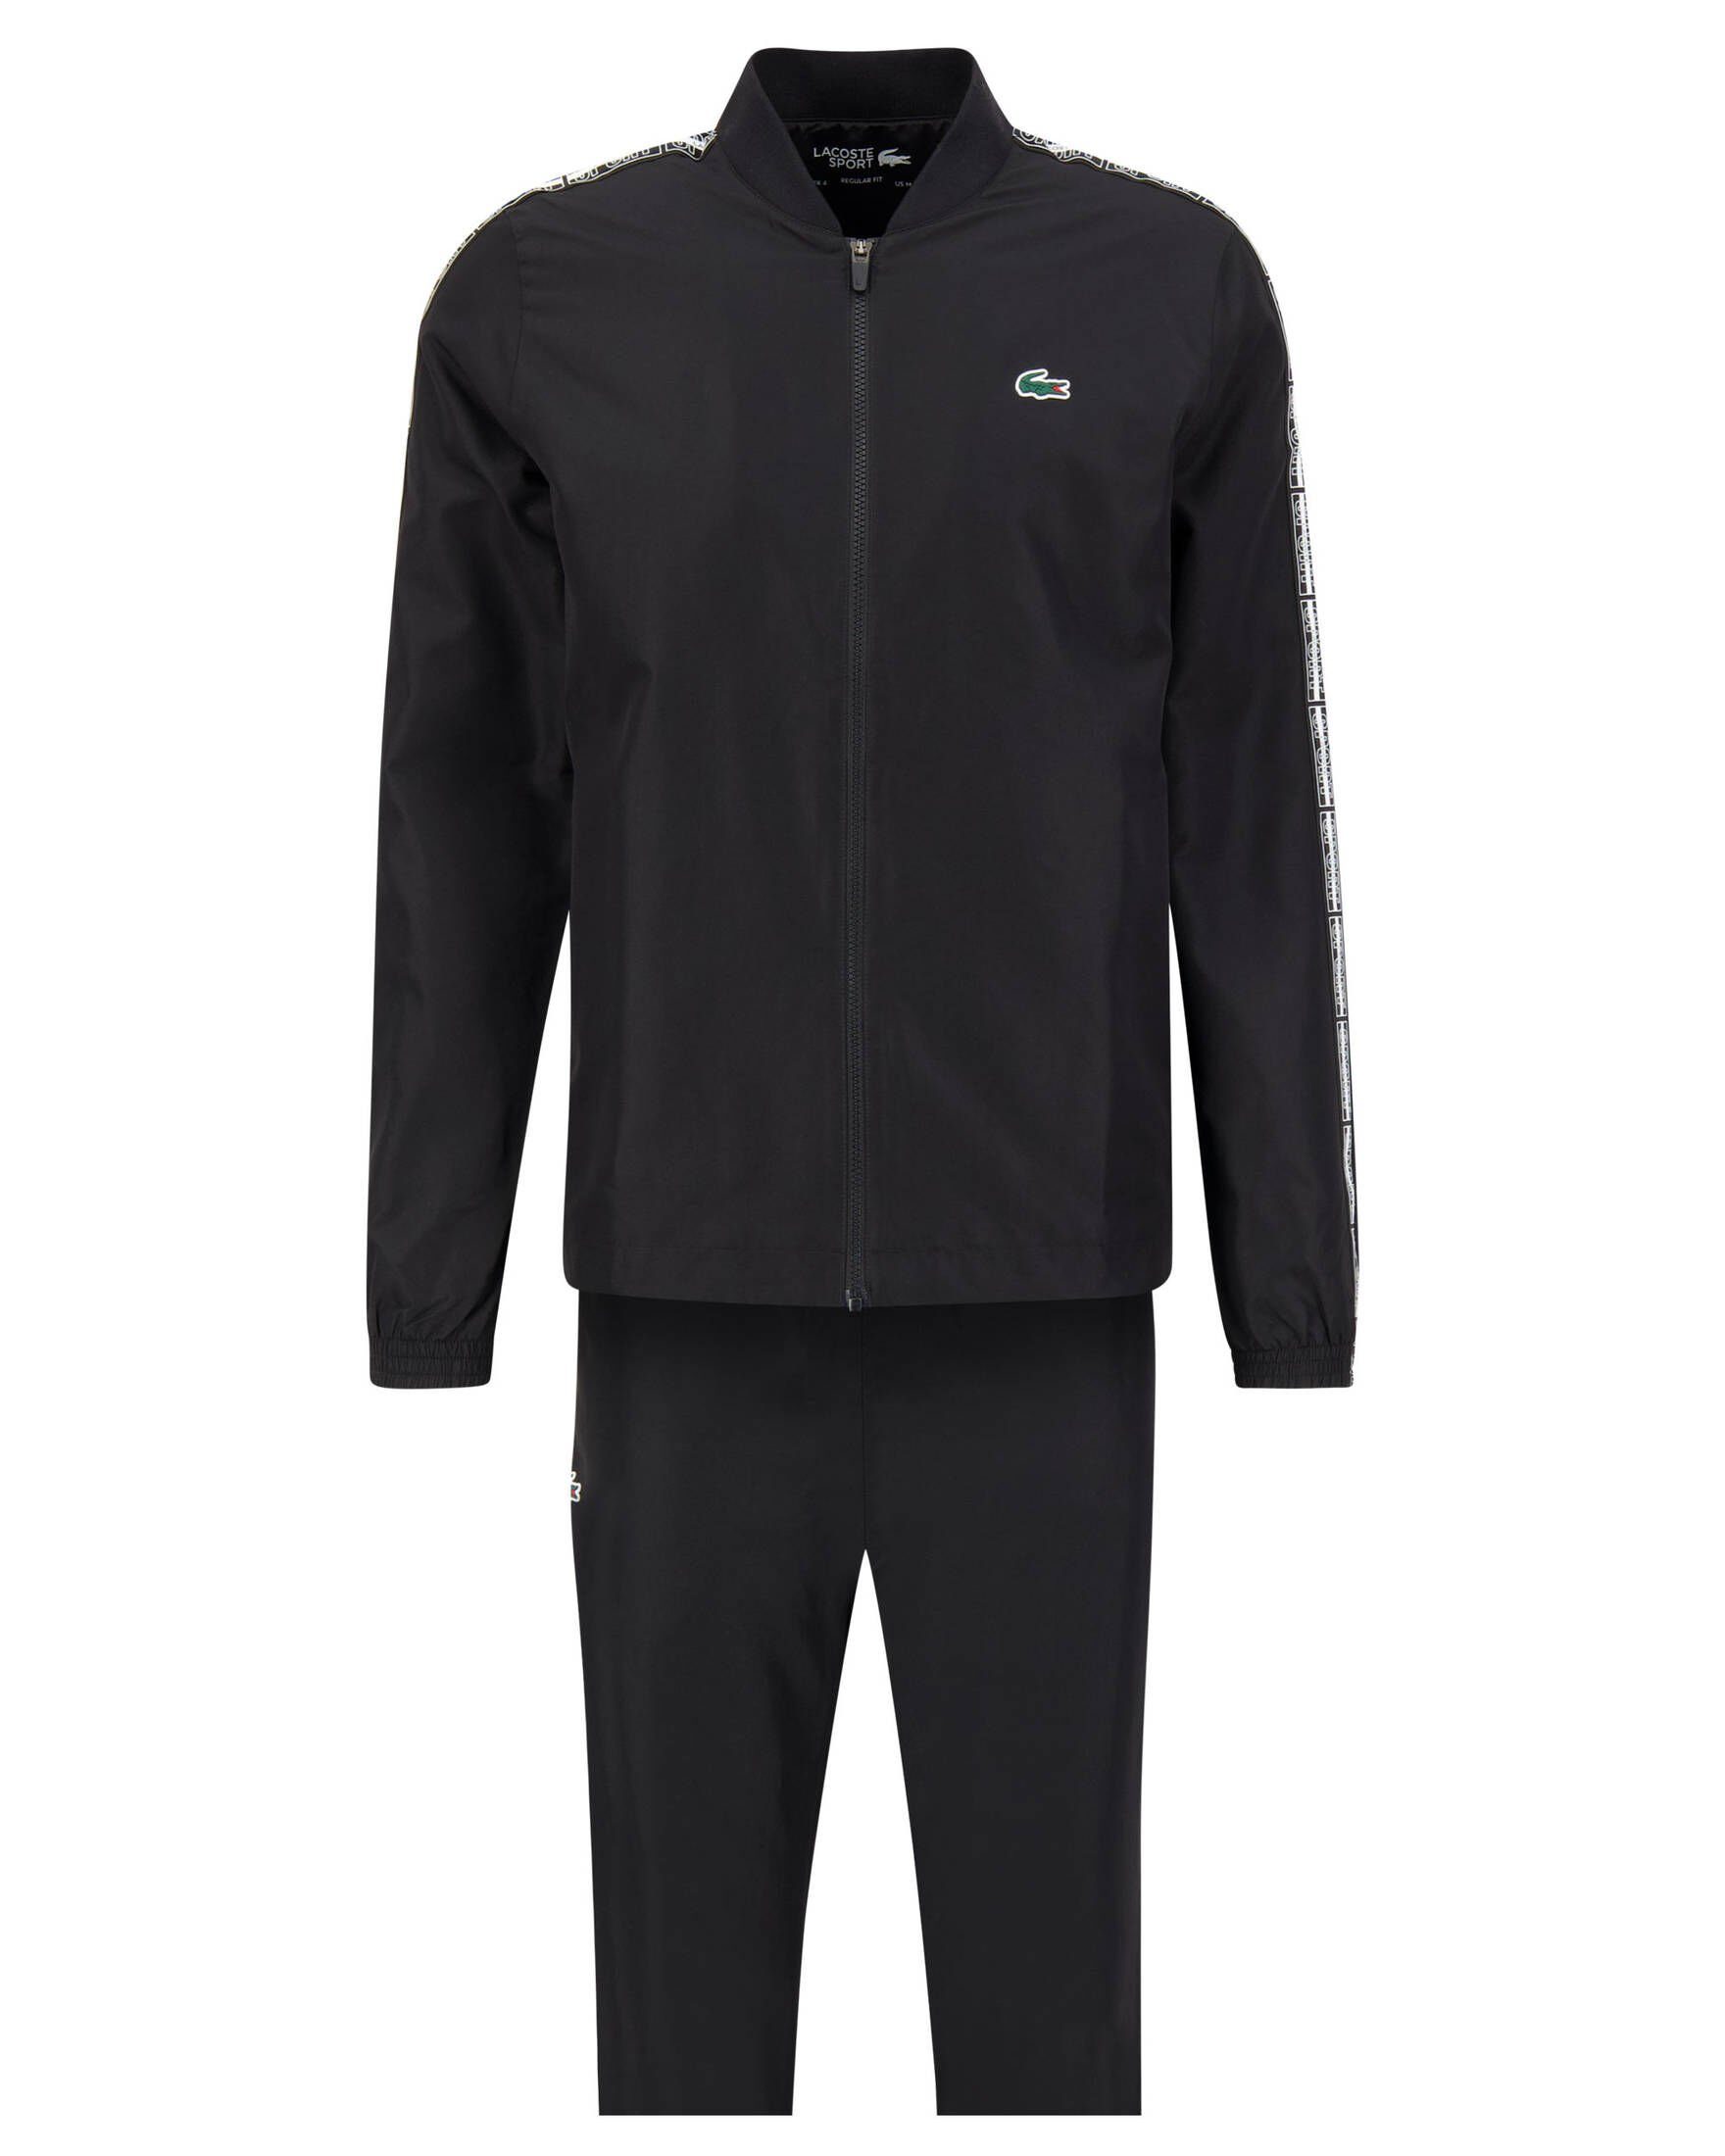 Lacoste Sport Trainingsanzug Herren Tennis-Anzug schwarz (200)